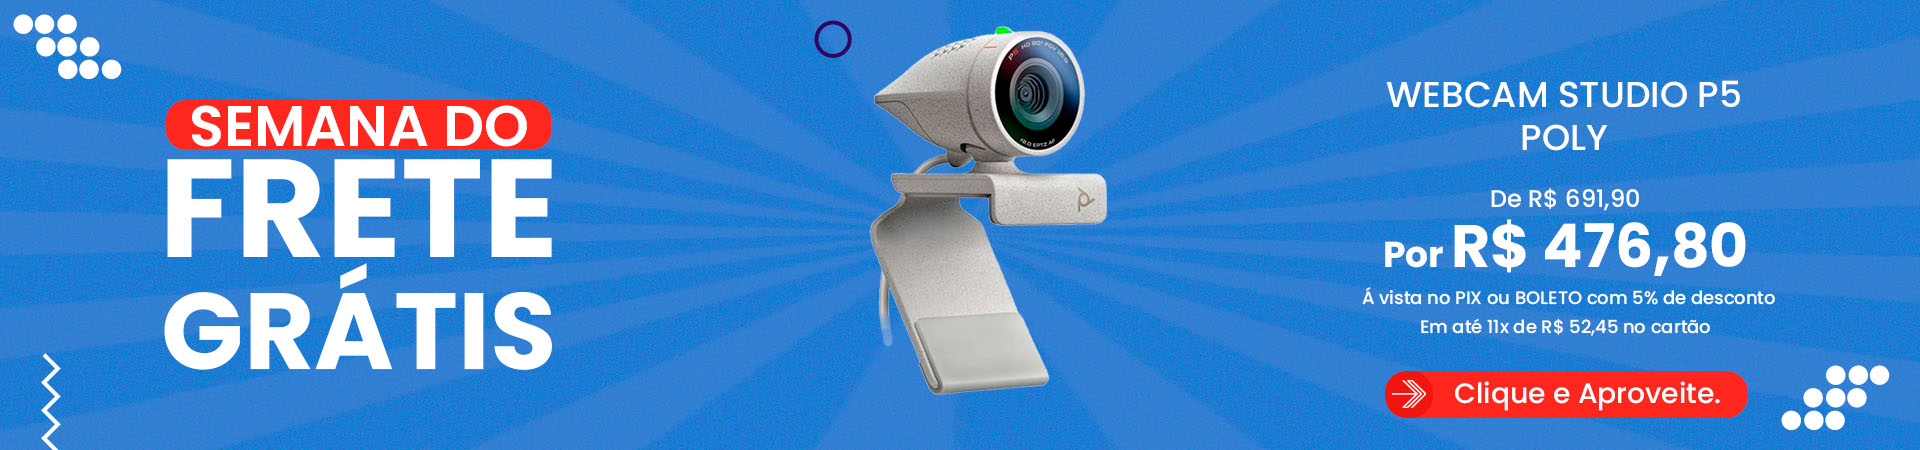 Banner Desk - Webcam Poly